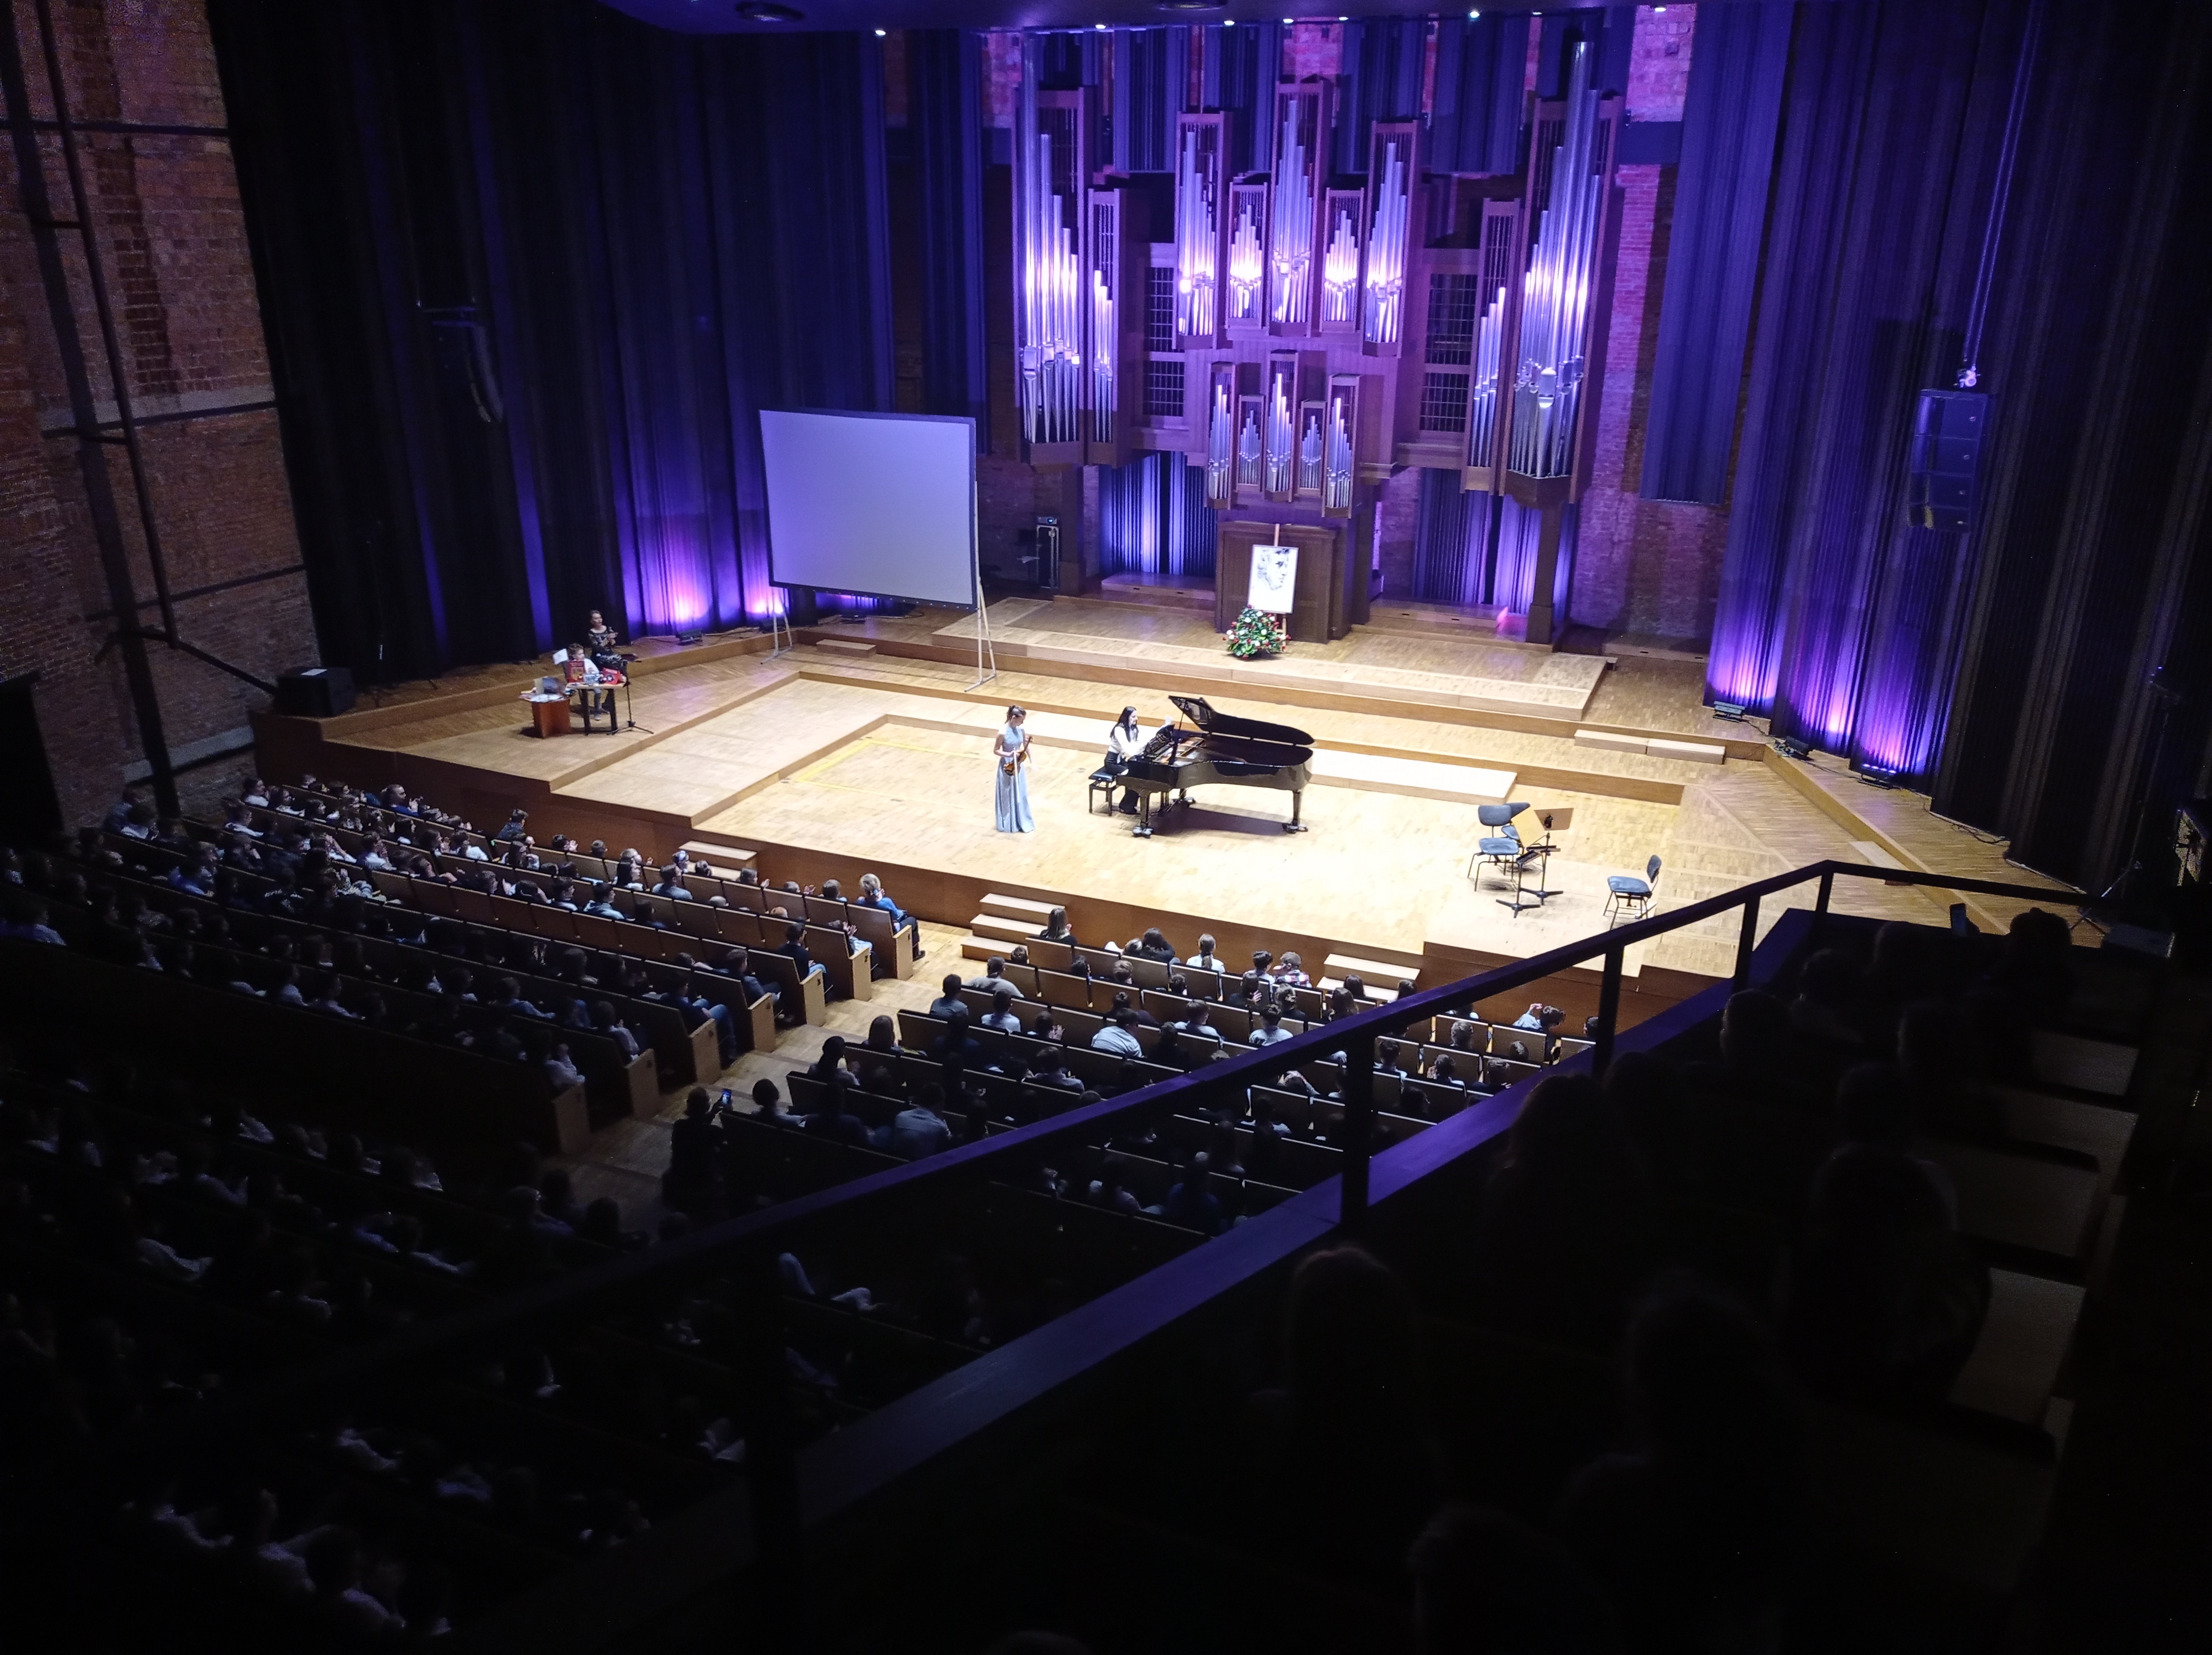 Scena Filharmonii Lubelskiej widziana z balkonu podczas koncertu